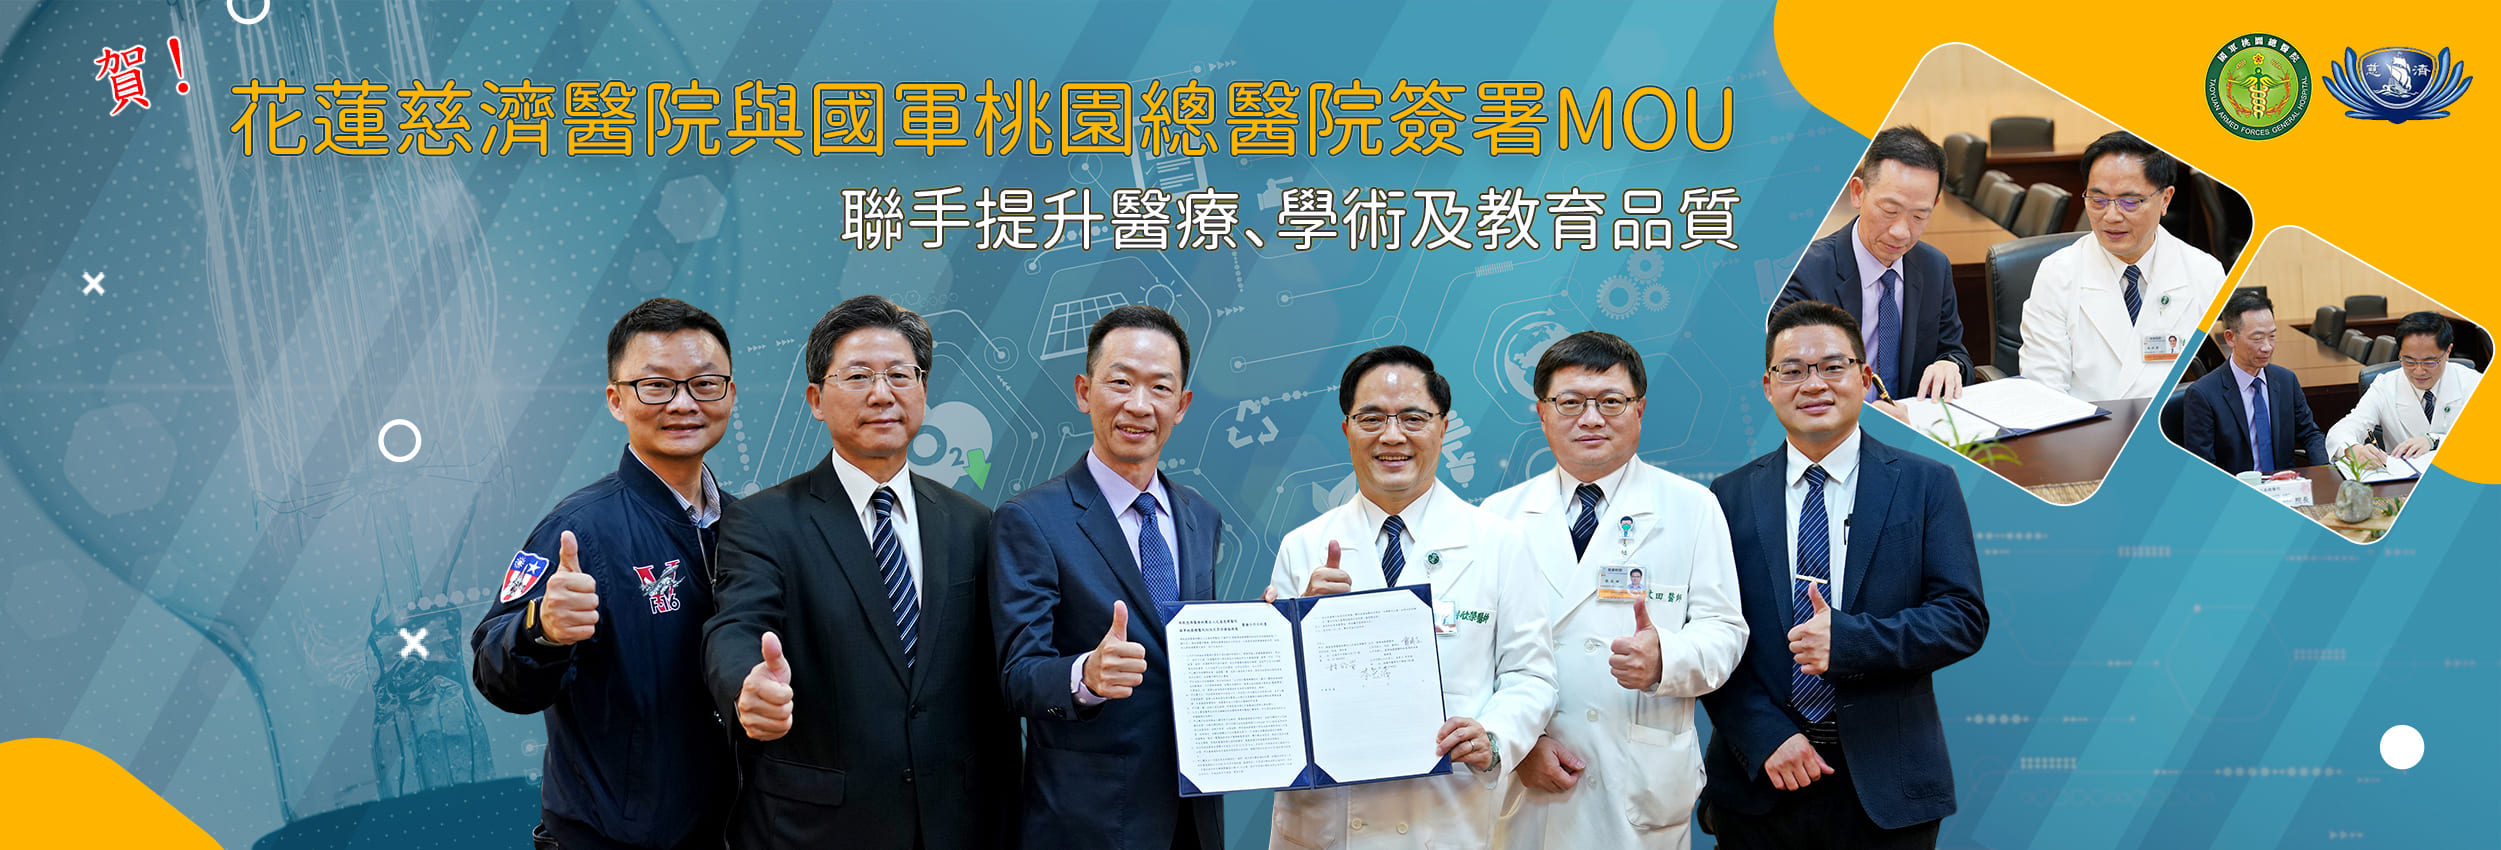 花蓮慈濟醫院與國軍桃園總醫院簽署MOU 聯手提升醫療、學術及教育品質